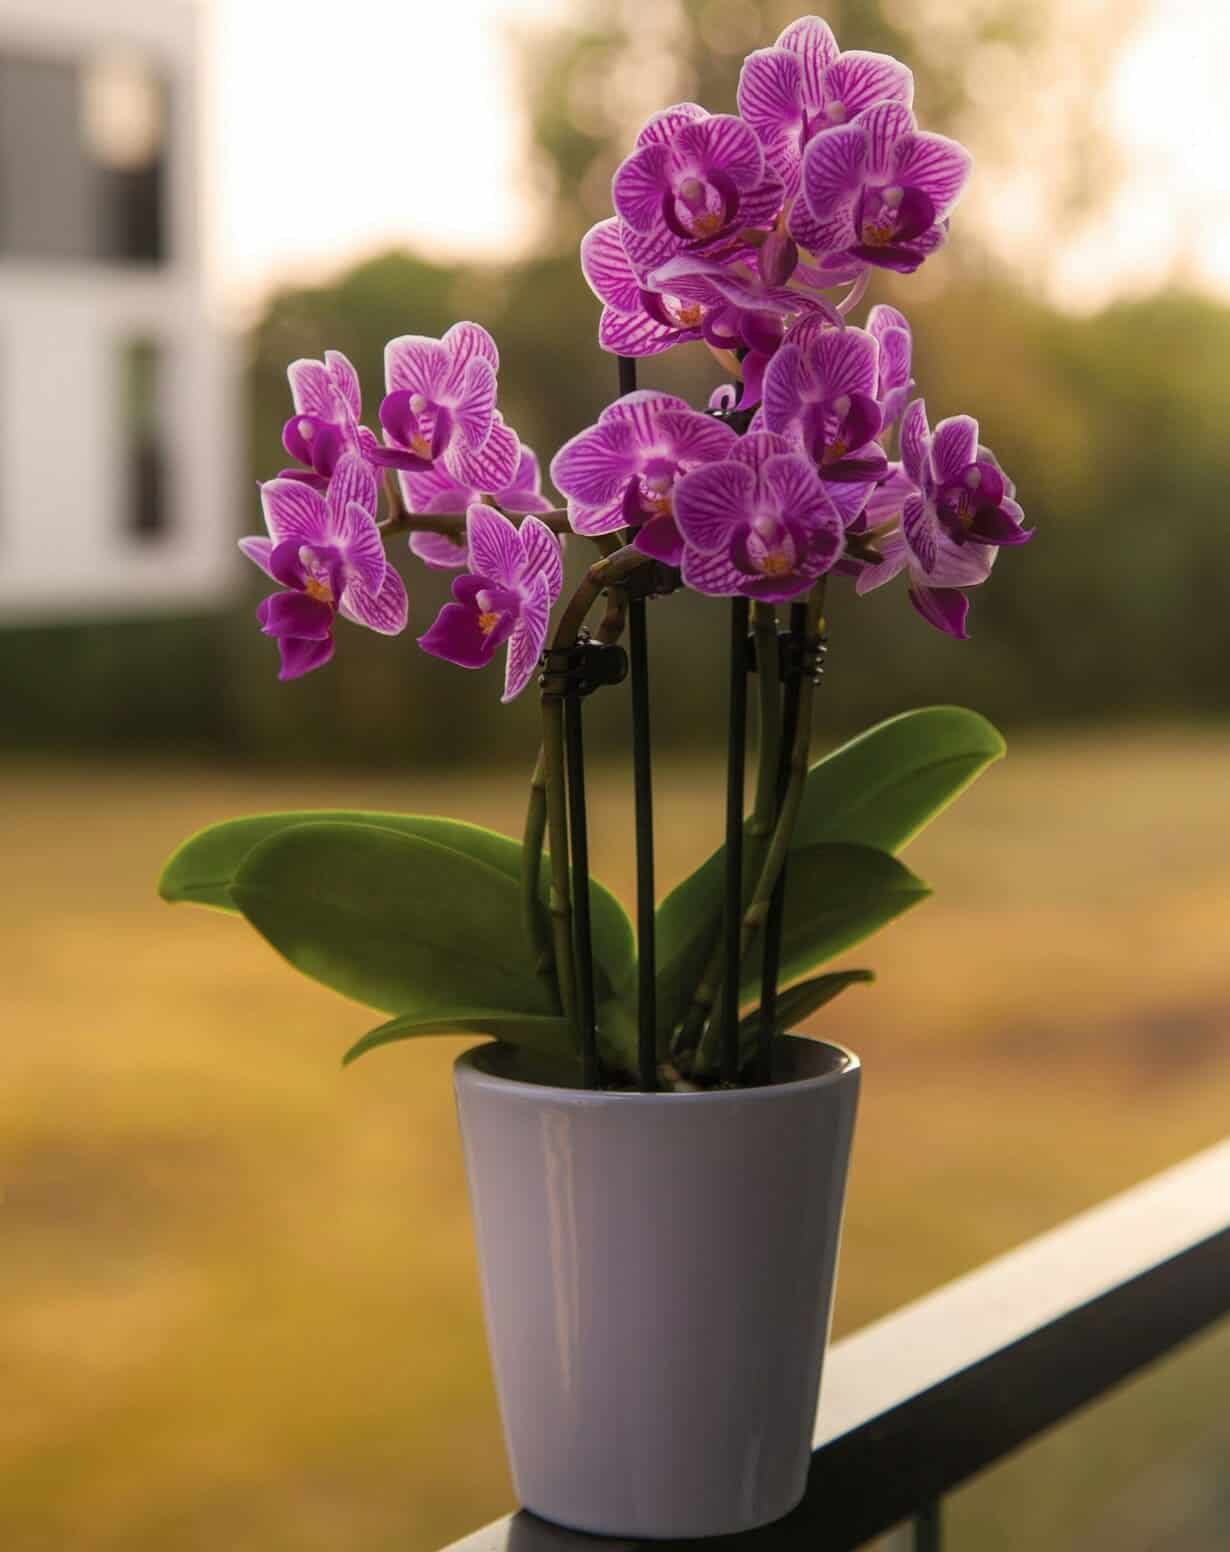 Como cuidar de uma orquídea? 6 dicas para ter flores lindas e saudáveis